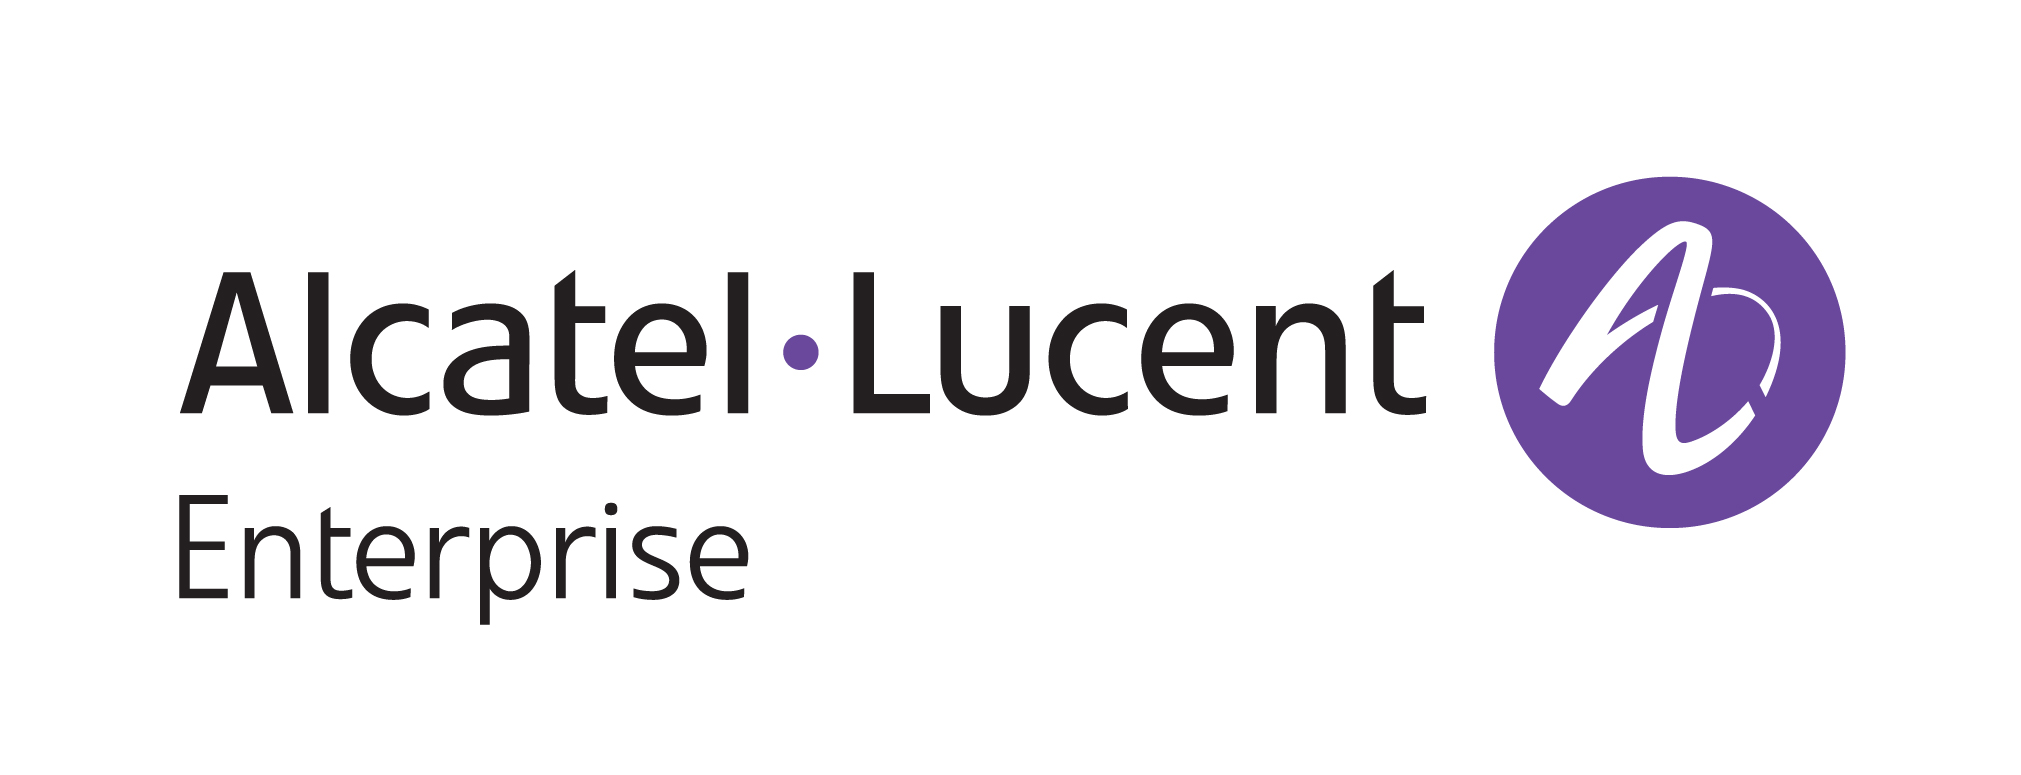 Talkingpointz On Alcatel Lucent Enterprise (Alue) - Alcatel Lucent Vector, Transparent background PNG HD thumbnail